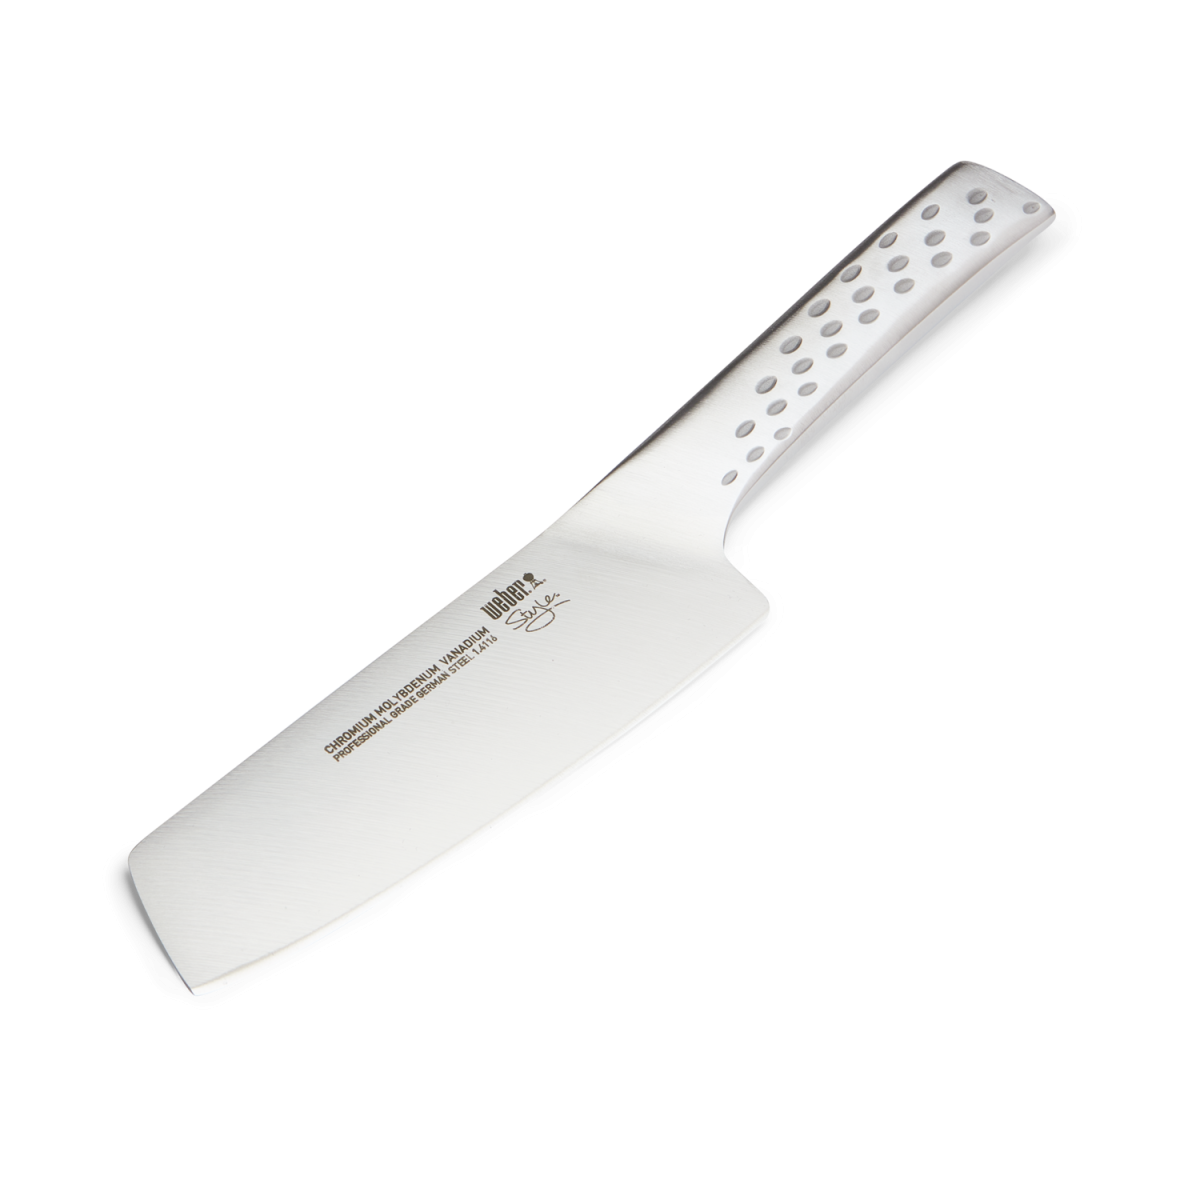 WEBER Deluxe Vegetable knife, Small, Stainless steel 17073